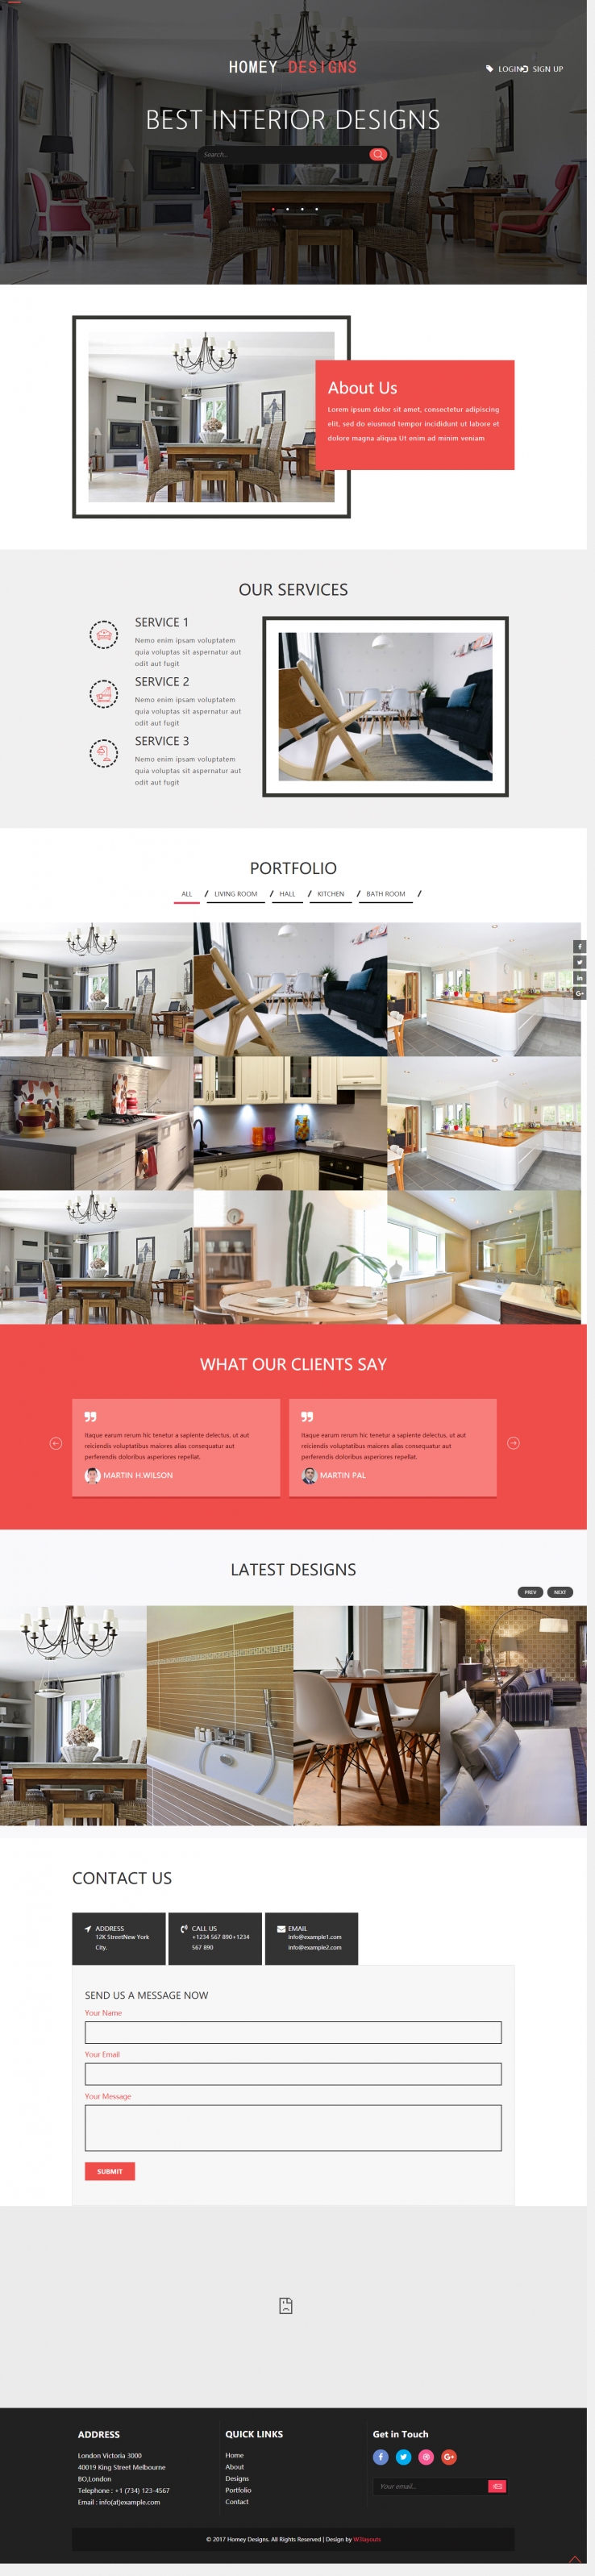 红色简洁风格的家居创意设计整站网站源码下载